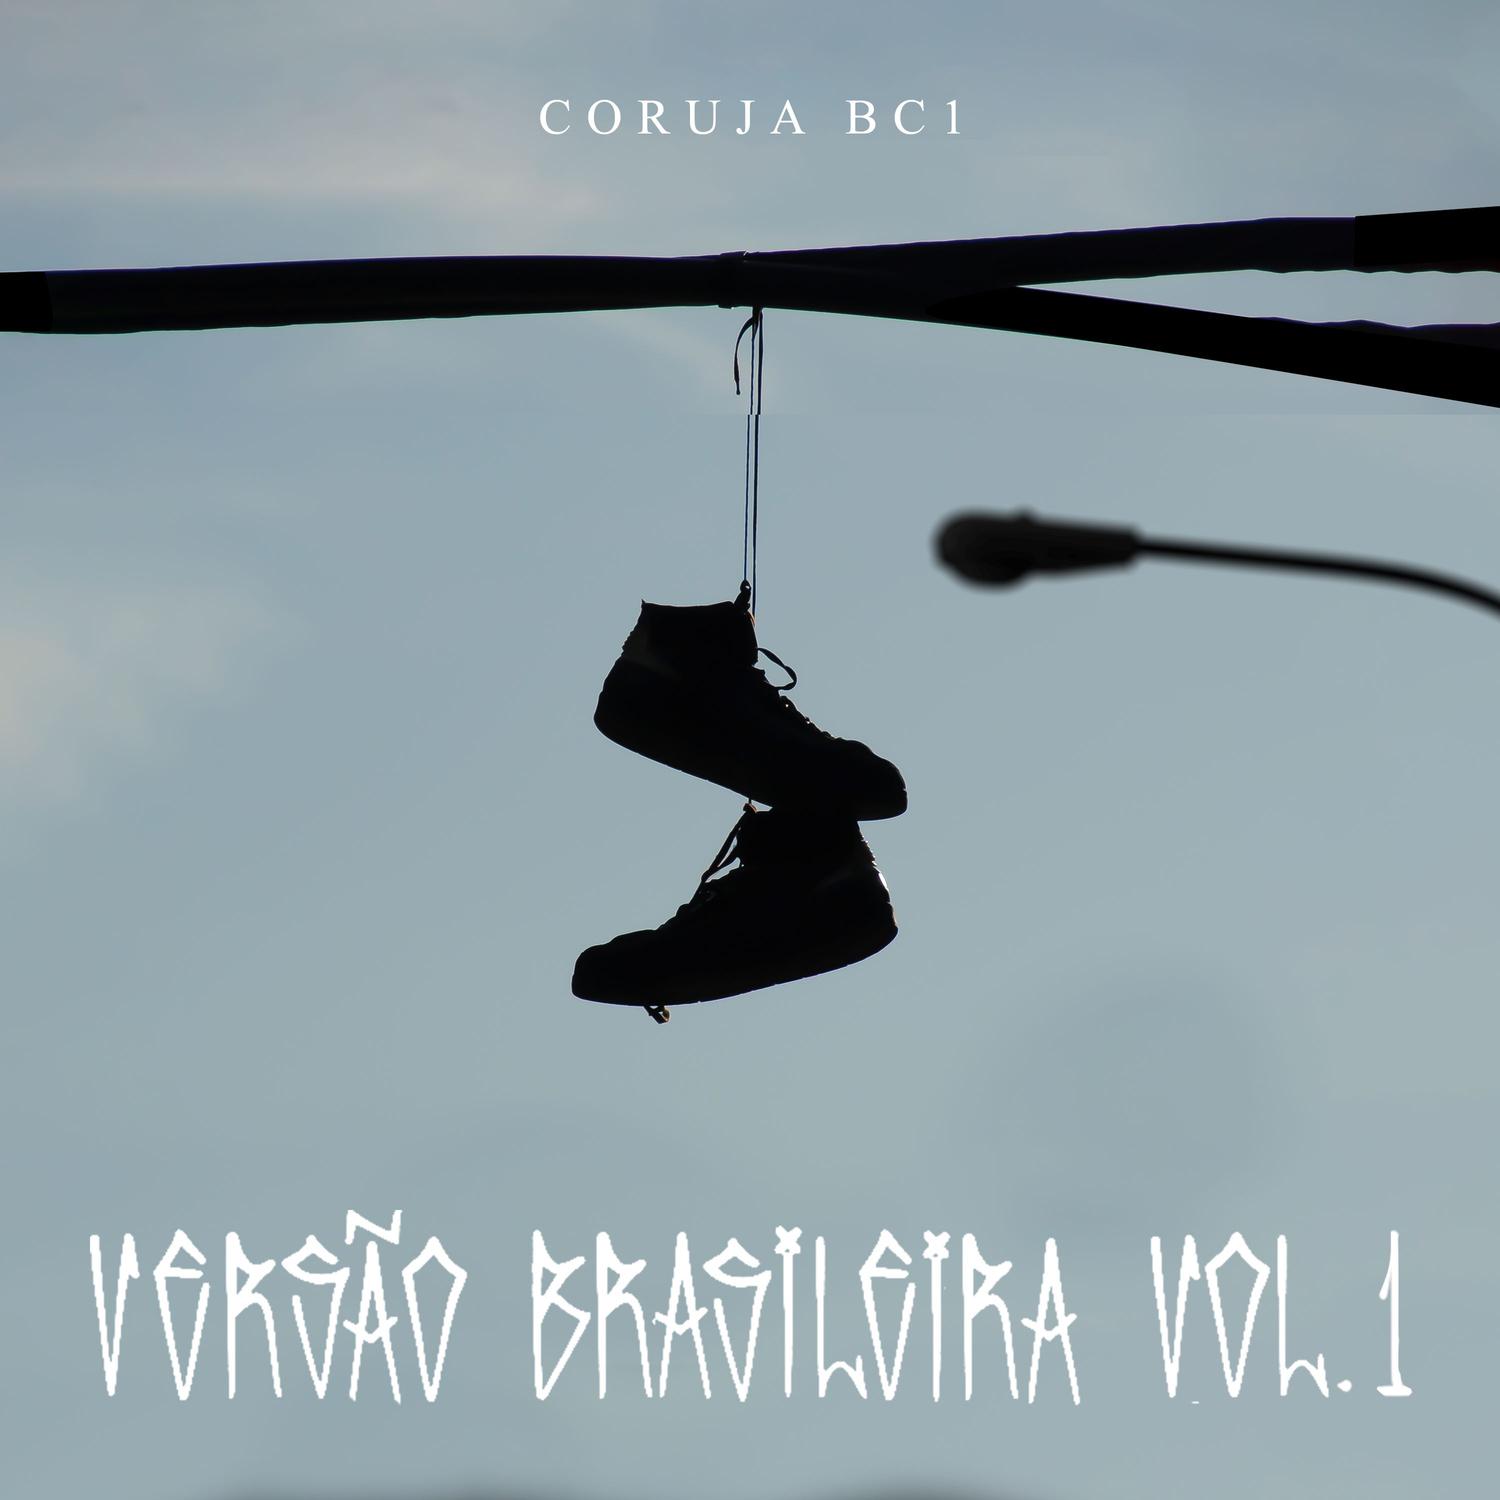 Coruja BC1 - Versão Brasileira